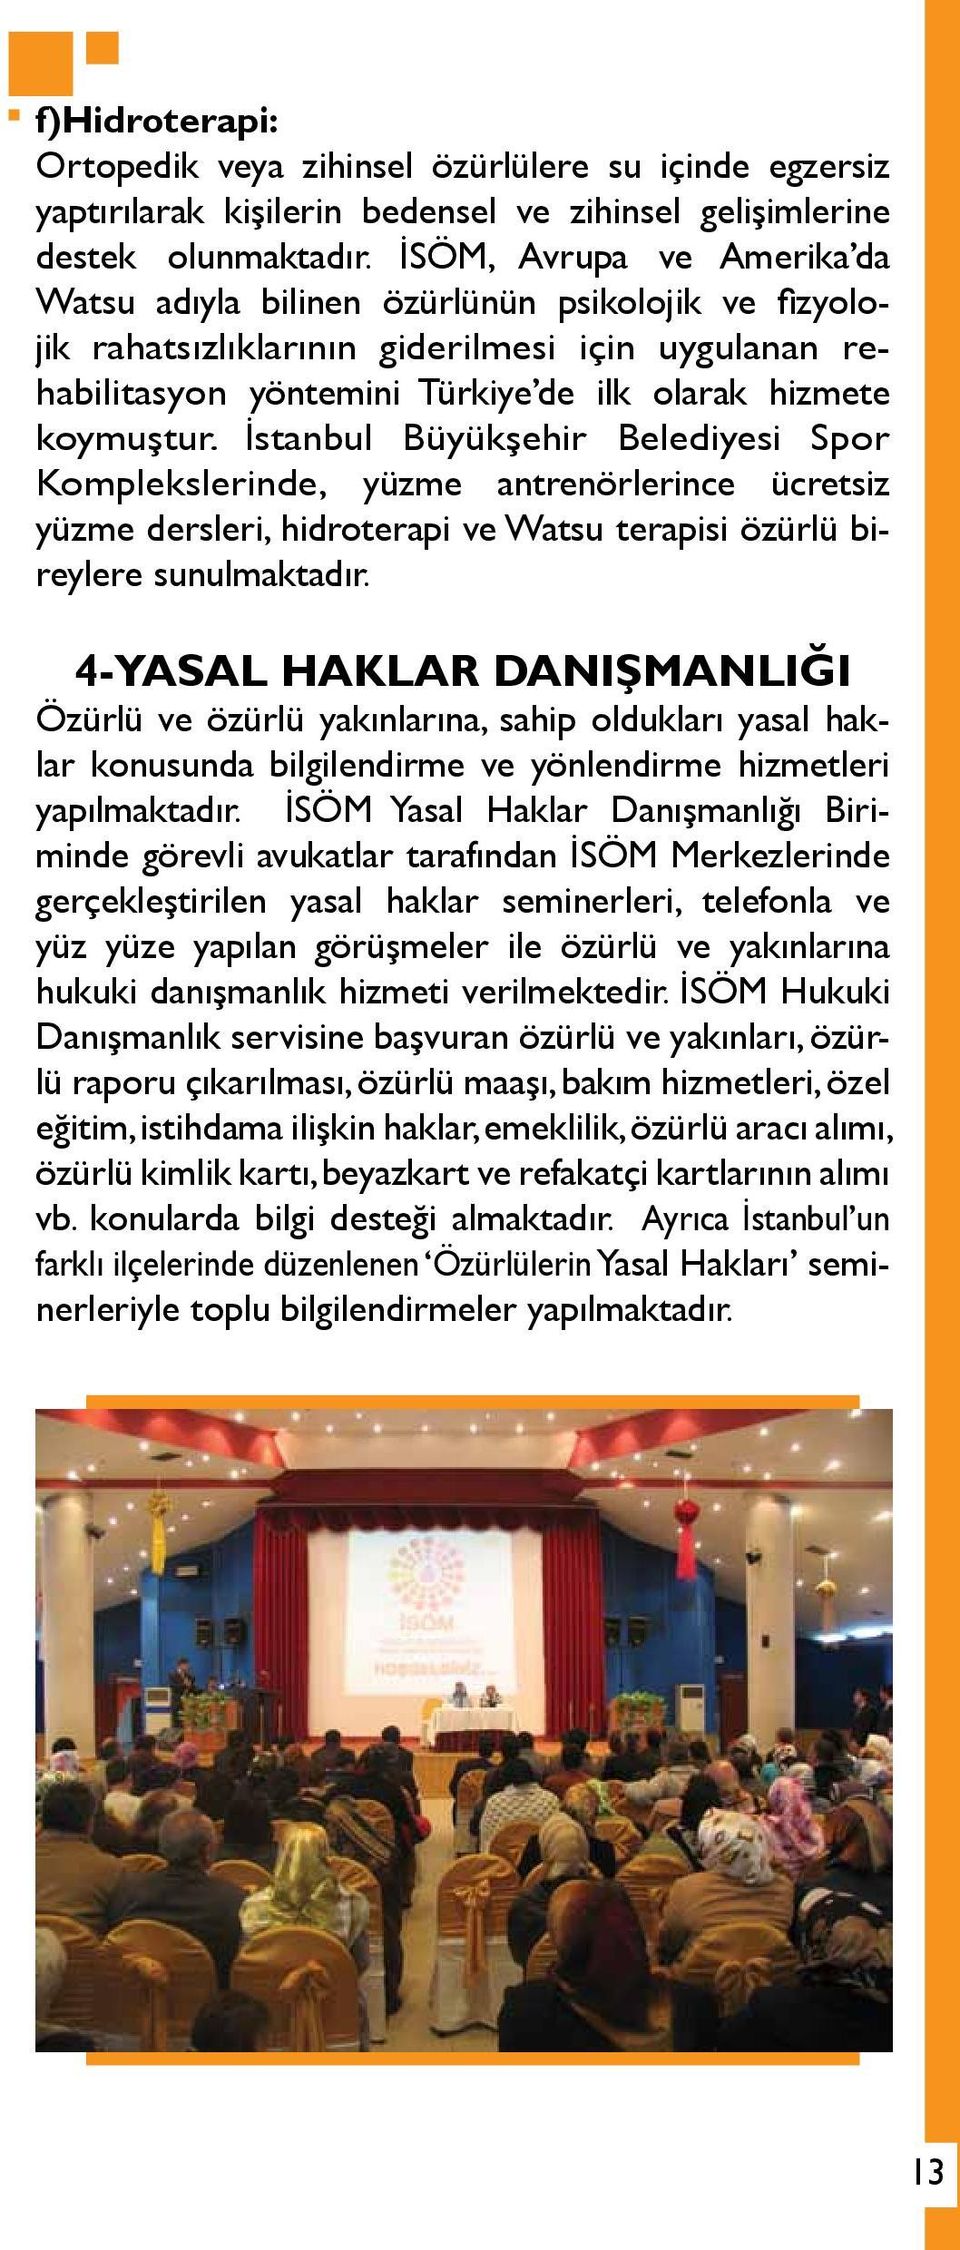 İstanbul Büyükşehir Belediyesi Spor Komplekslerinde, yüzme antrenörlerince ücretsiz yüzme dersleri, hidroterapi ve Watsu terapisi özürlü bireylere sunulmaktadır.